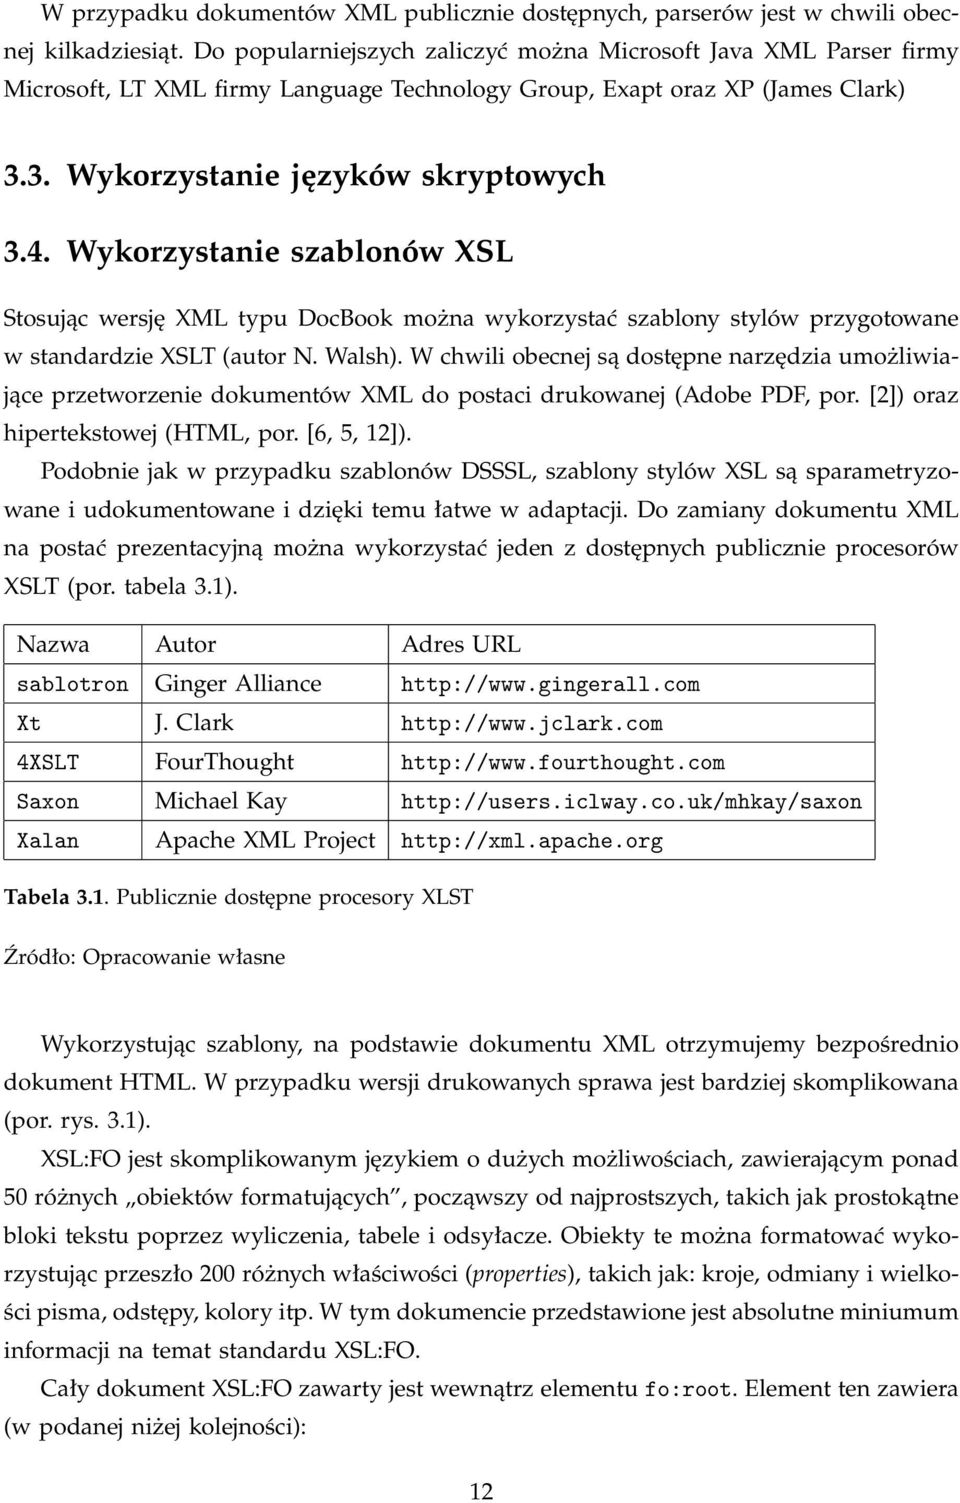 Wykorzystanie szablonów XSL Stosując wersję XML typu DocBook można wykorzystać szablony stylów przygotowane w standardzie XSLT (autor N. Walsh).